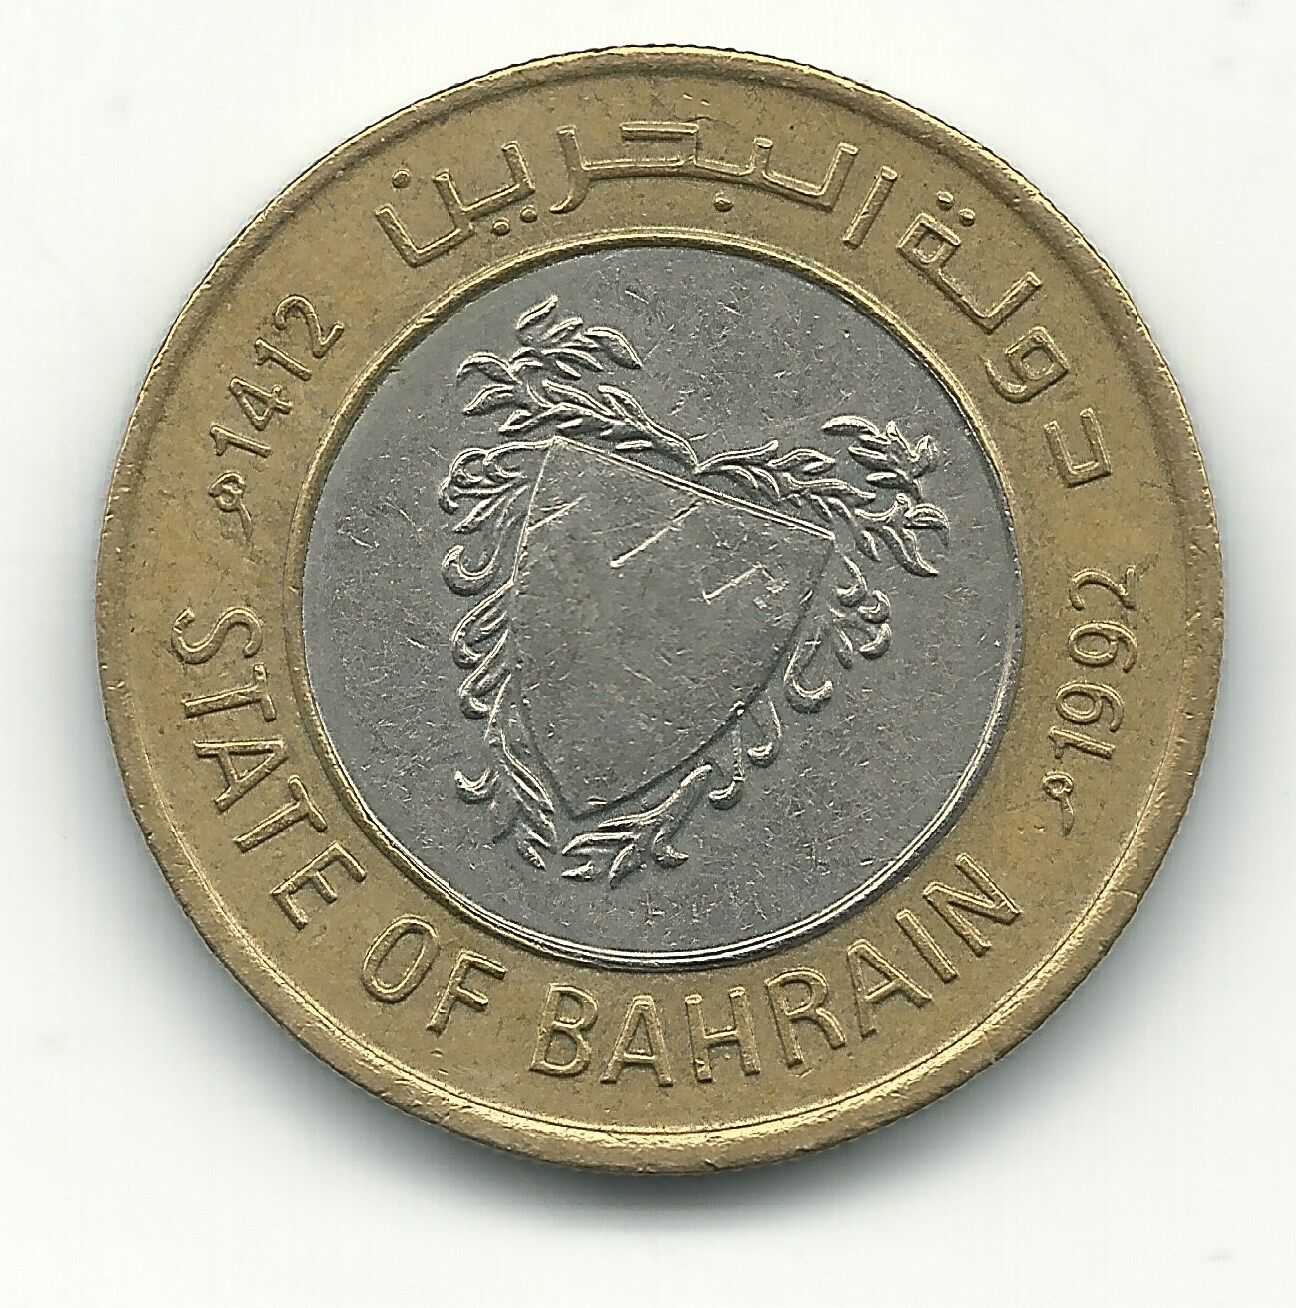 High Grade Xf/au 1992 Bahrain Bimetal 100 Fils Coin-feb093